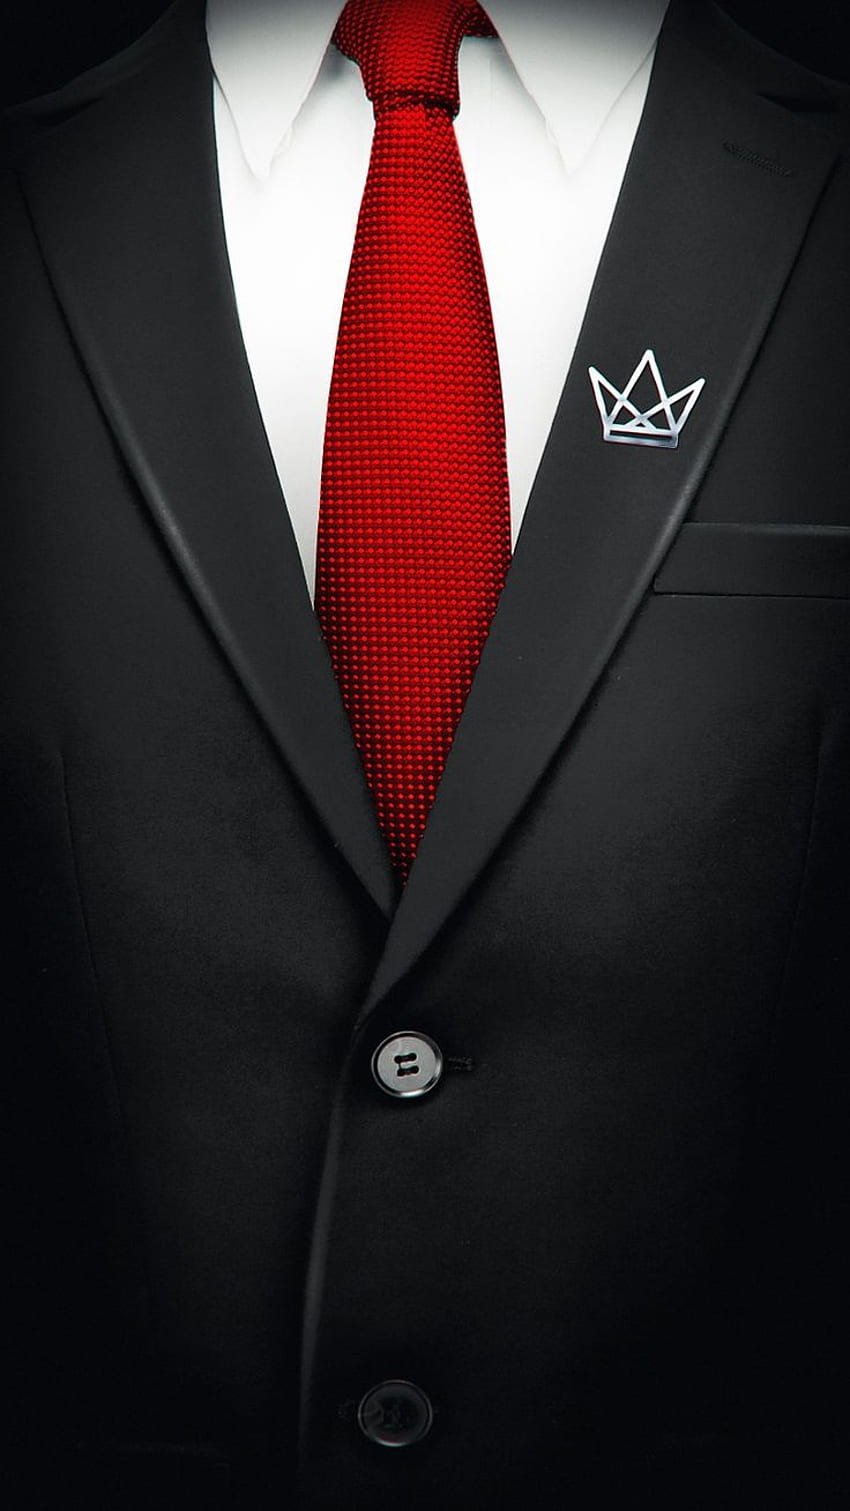 Cristeriot auf Phonfo. iPhone , Telefon für Männer, iPhone Neon, schwarzer Anzug, rote Krawatte HD-Handy-Hintergrundbild